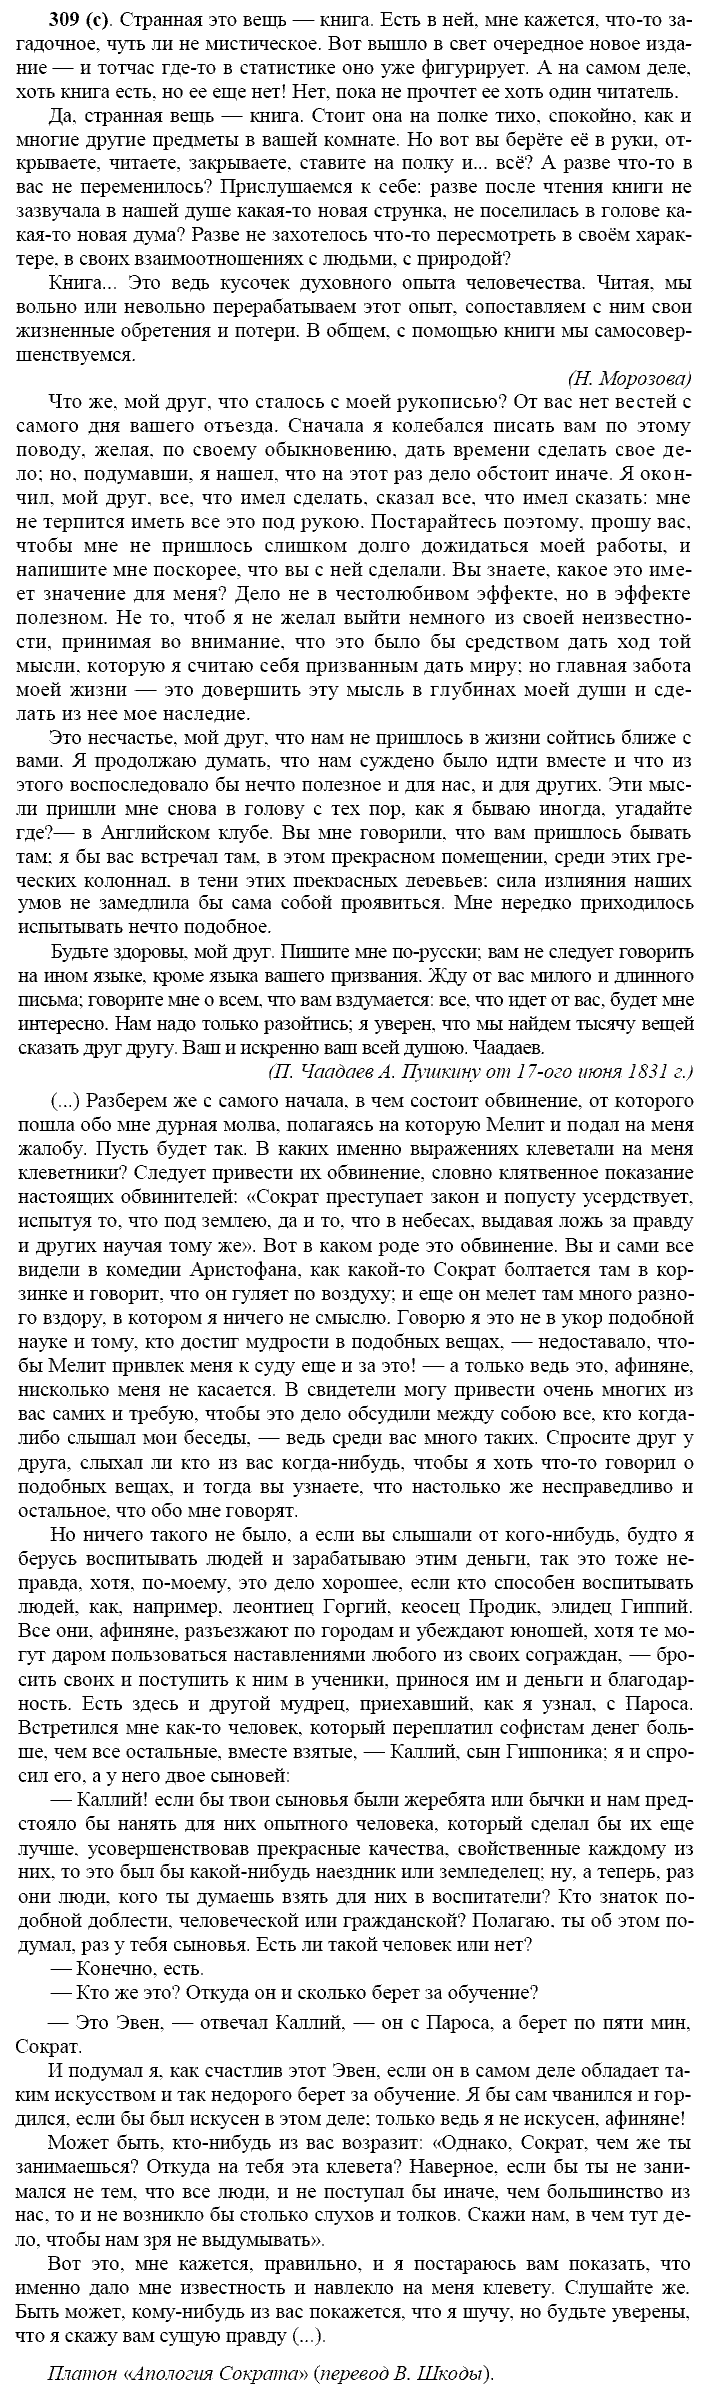 Русский язык, 11 класс, Власенков, Рыбченков, 2009-2014, задание: 309 (с)